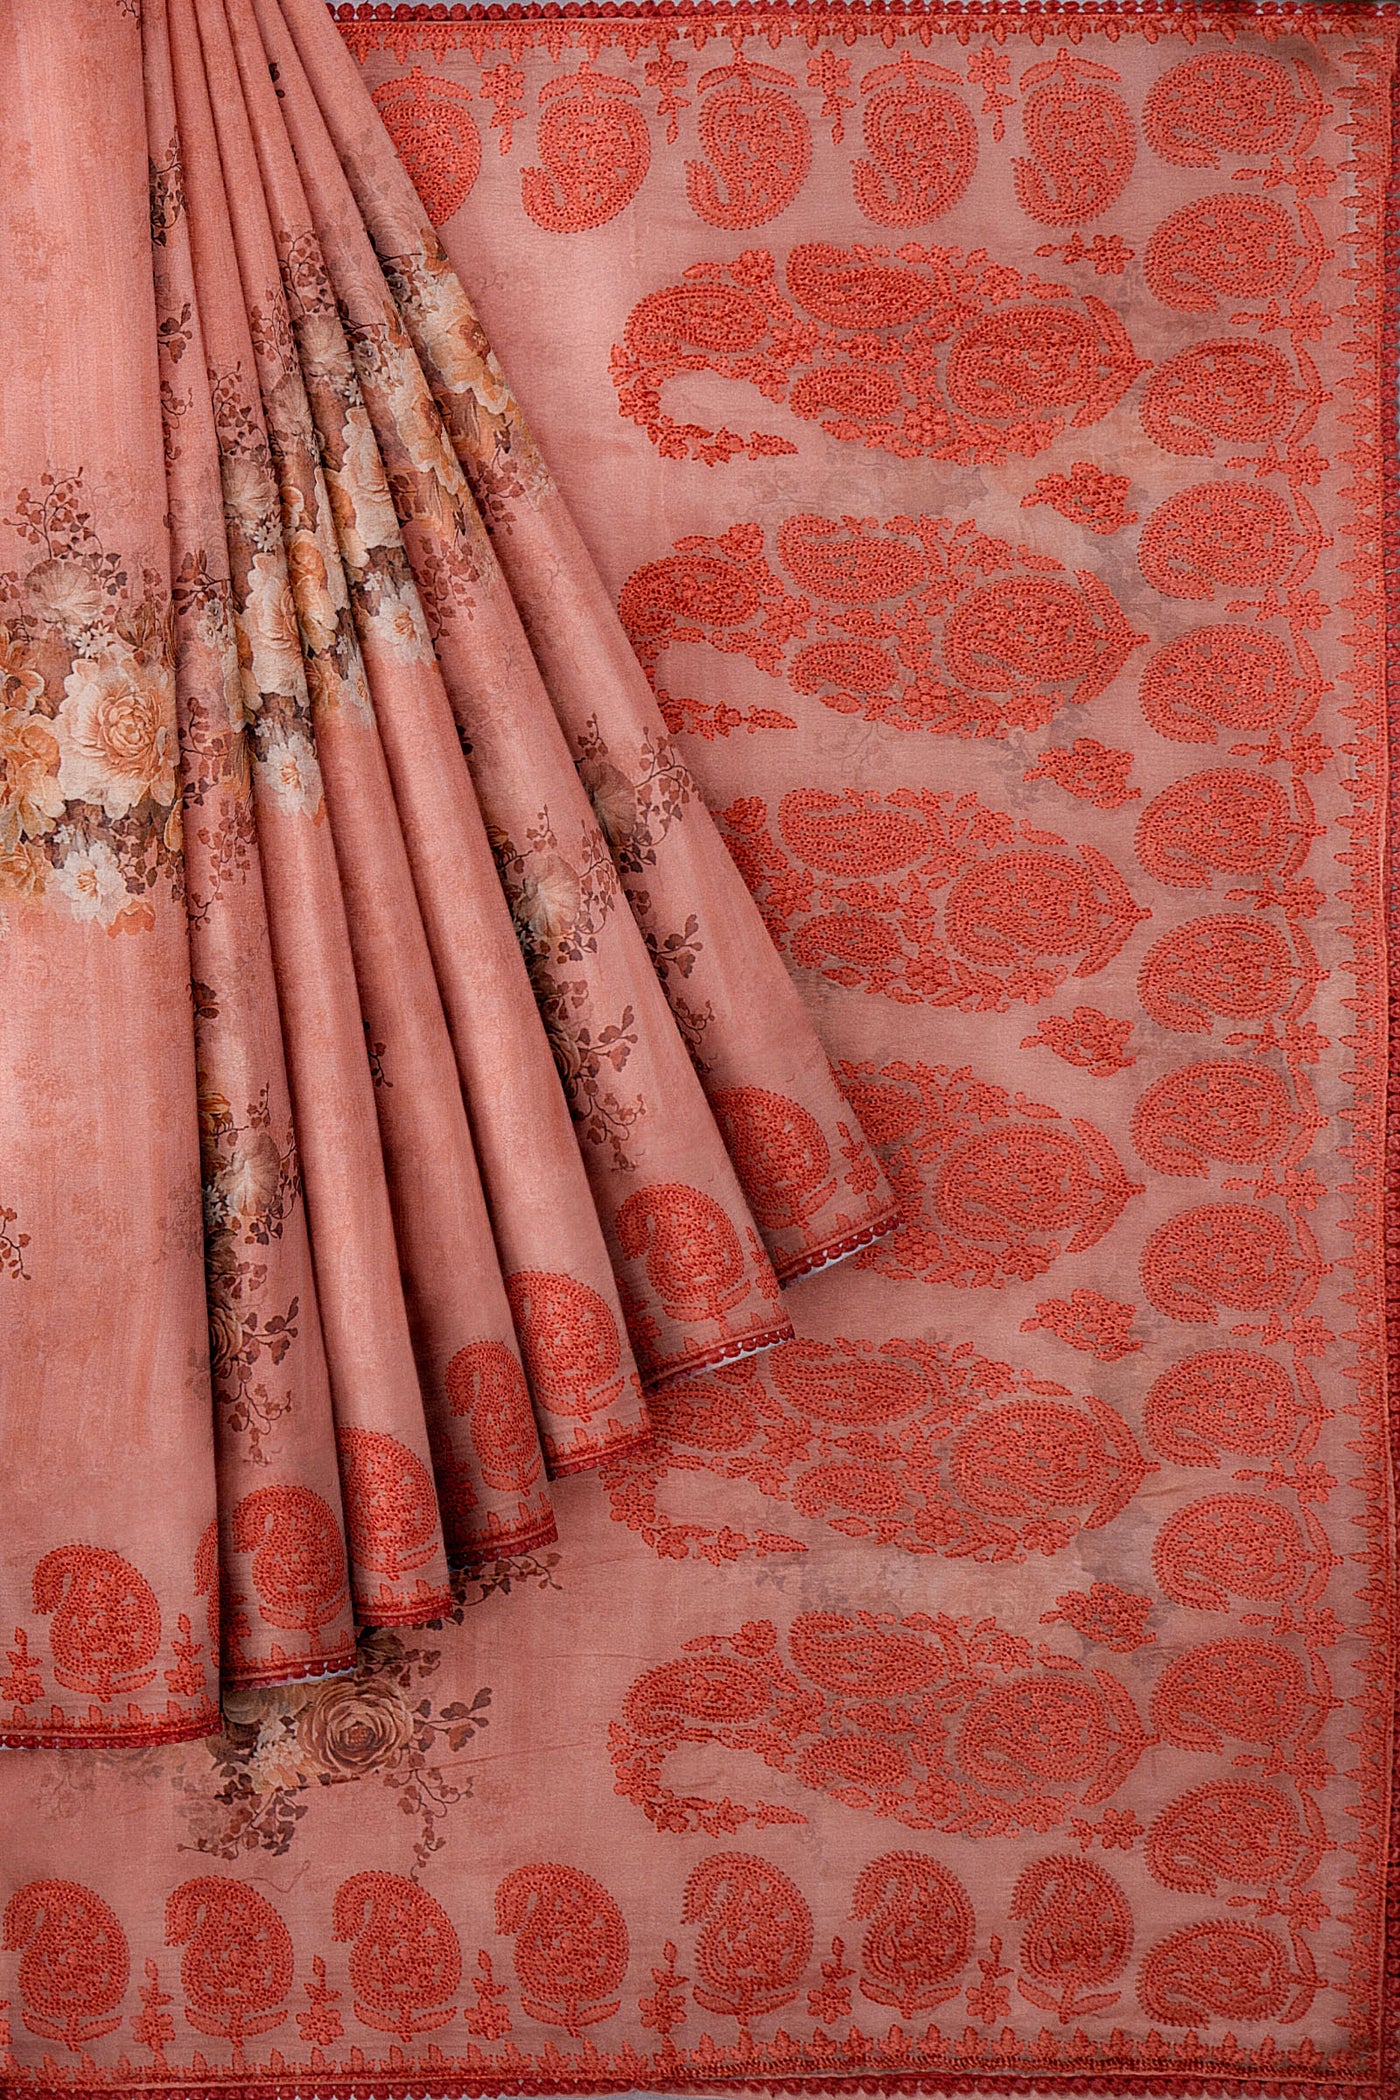 Peach Floral Printed Organza Saree - Clio Silks